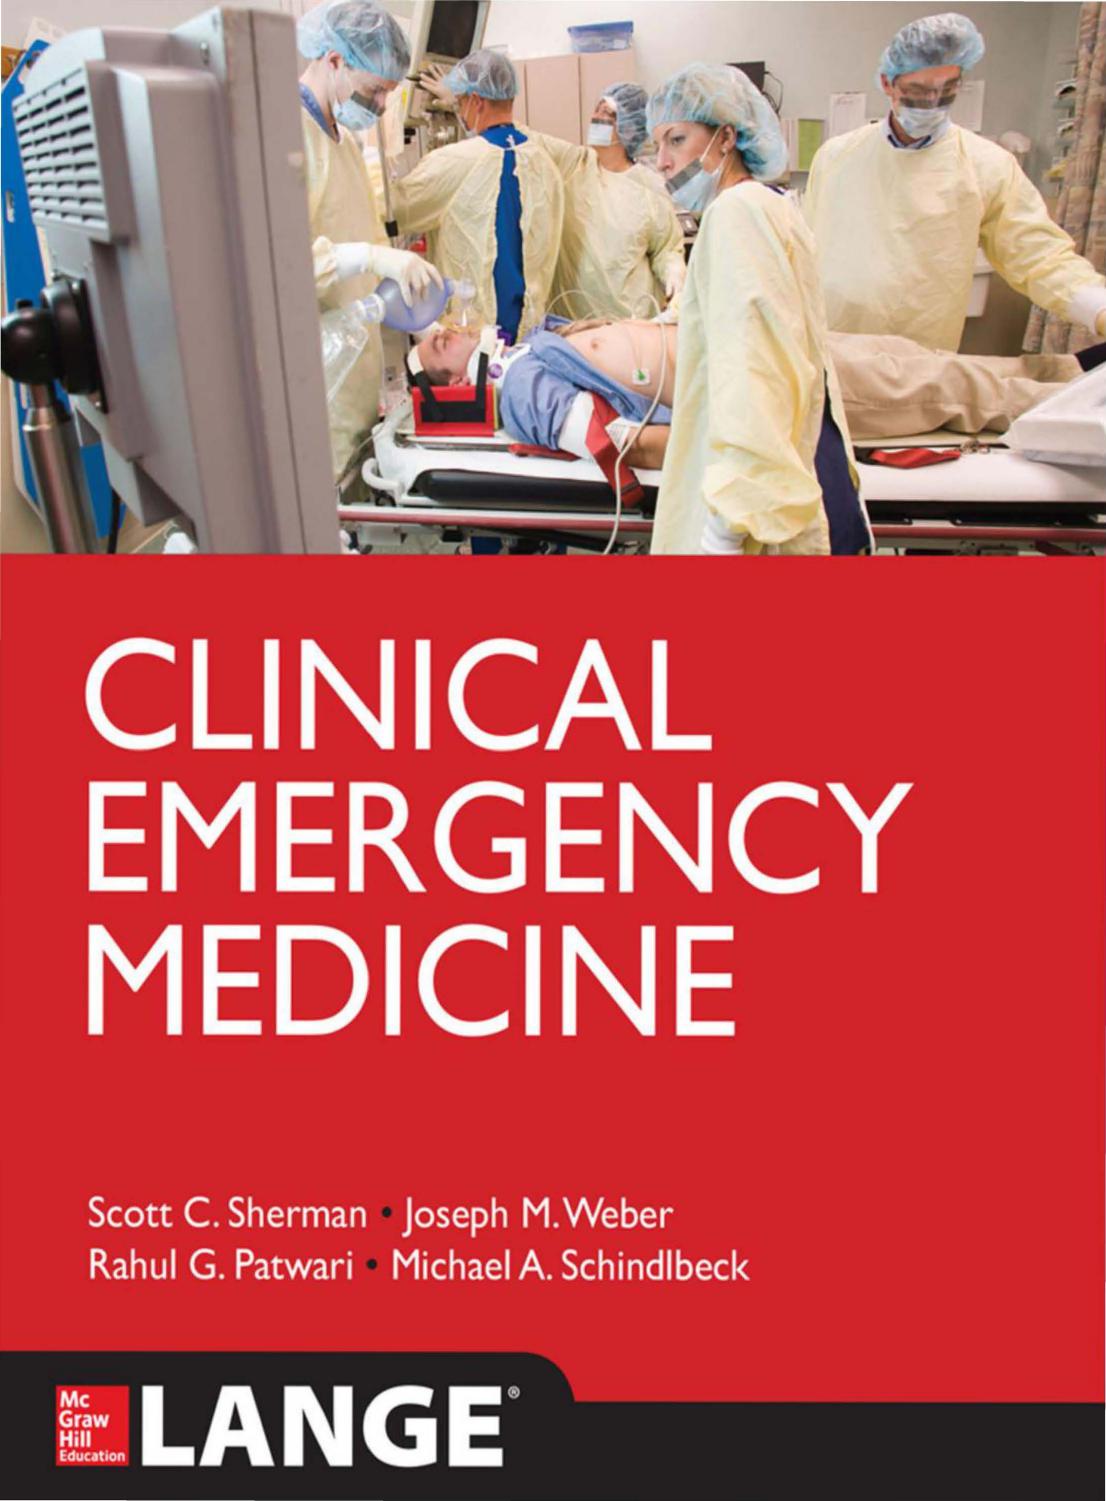 Clinical Emergency Medicine 2014